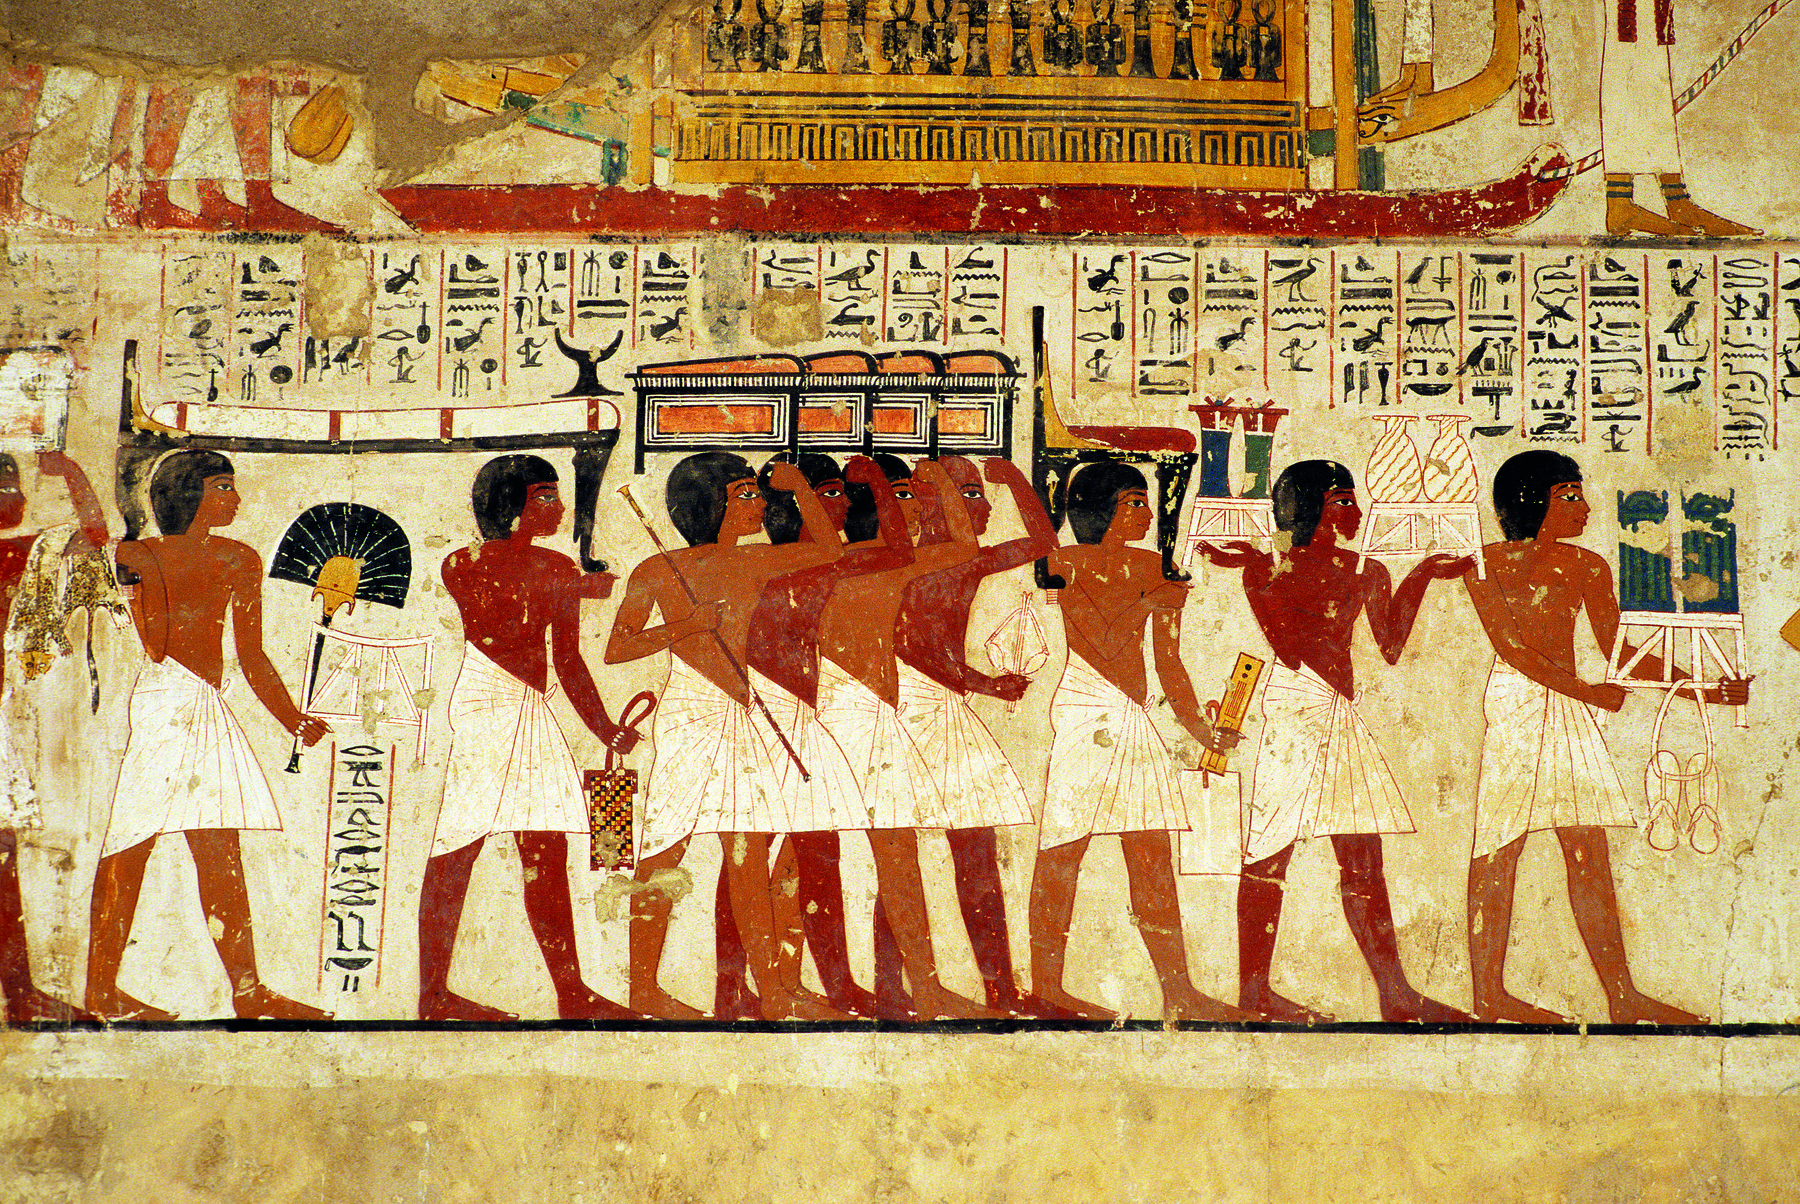 Pintura. Homens vestindo tecidos brancos ao redor de suas cinturas, lado a lado, apoiando um sarcófago em suas mãos, sobre suas cabeças. Acima, imagens de hieróglifos.